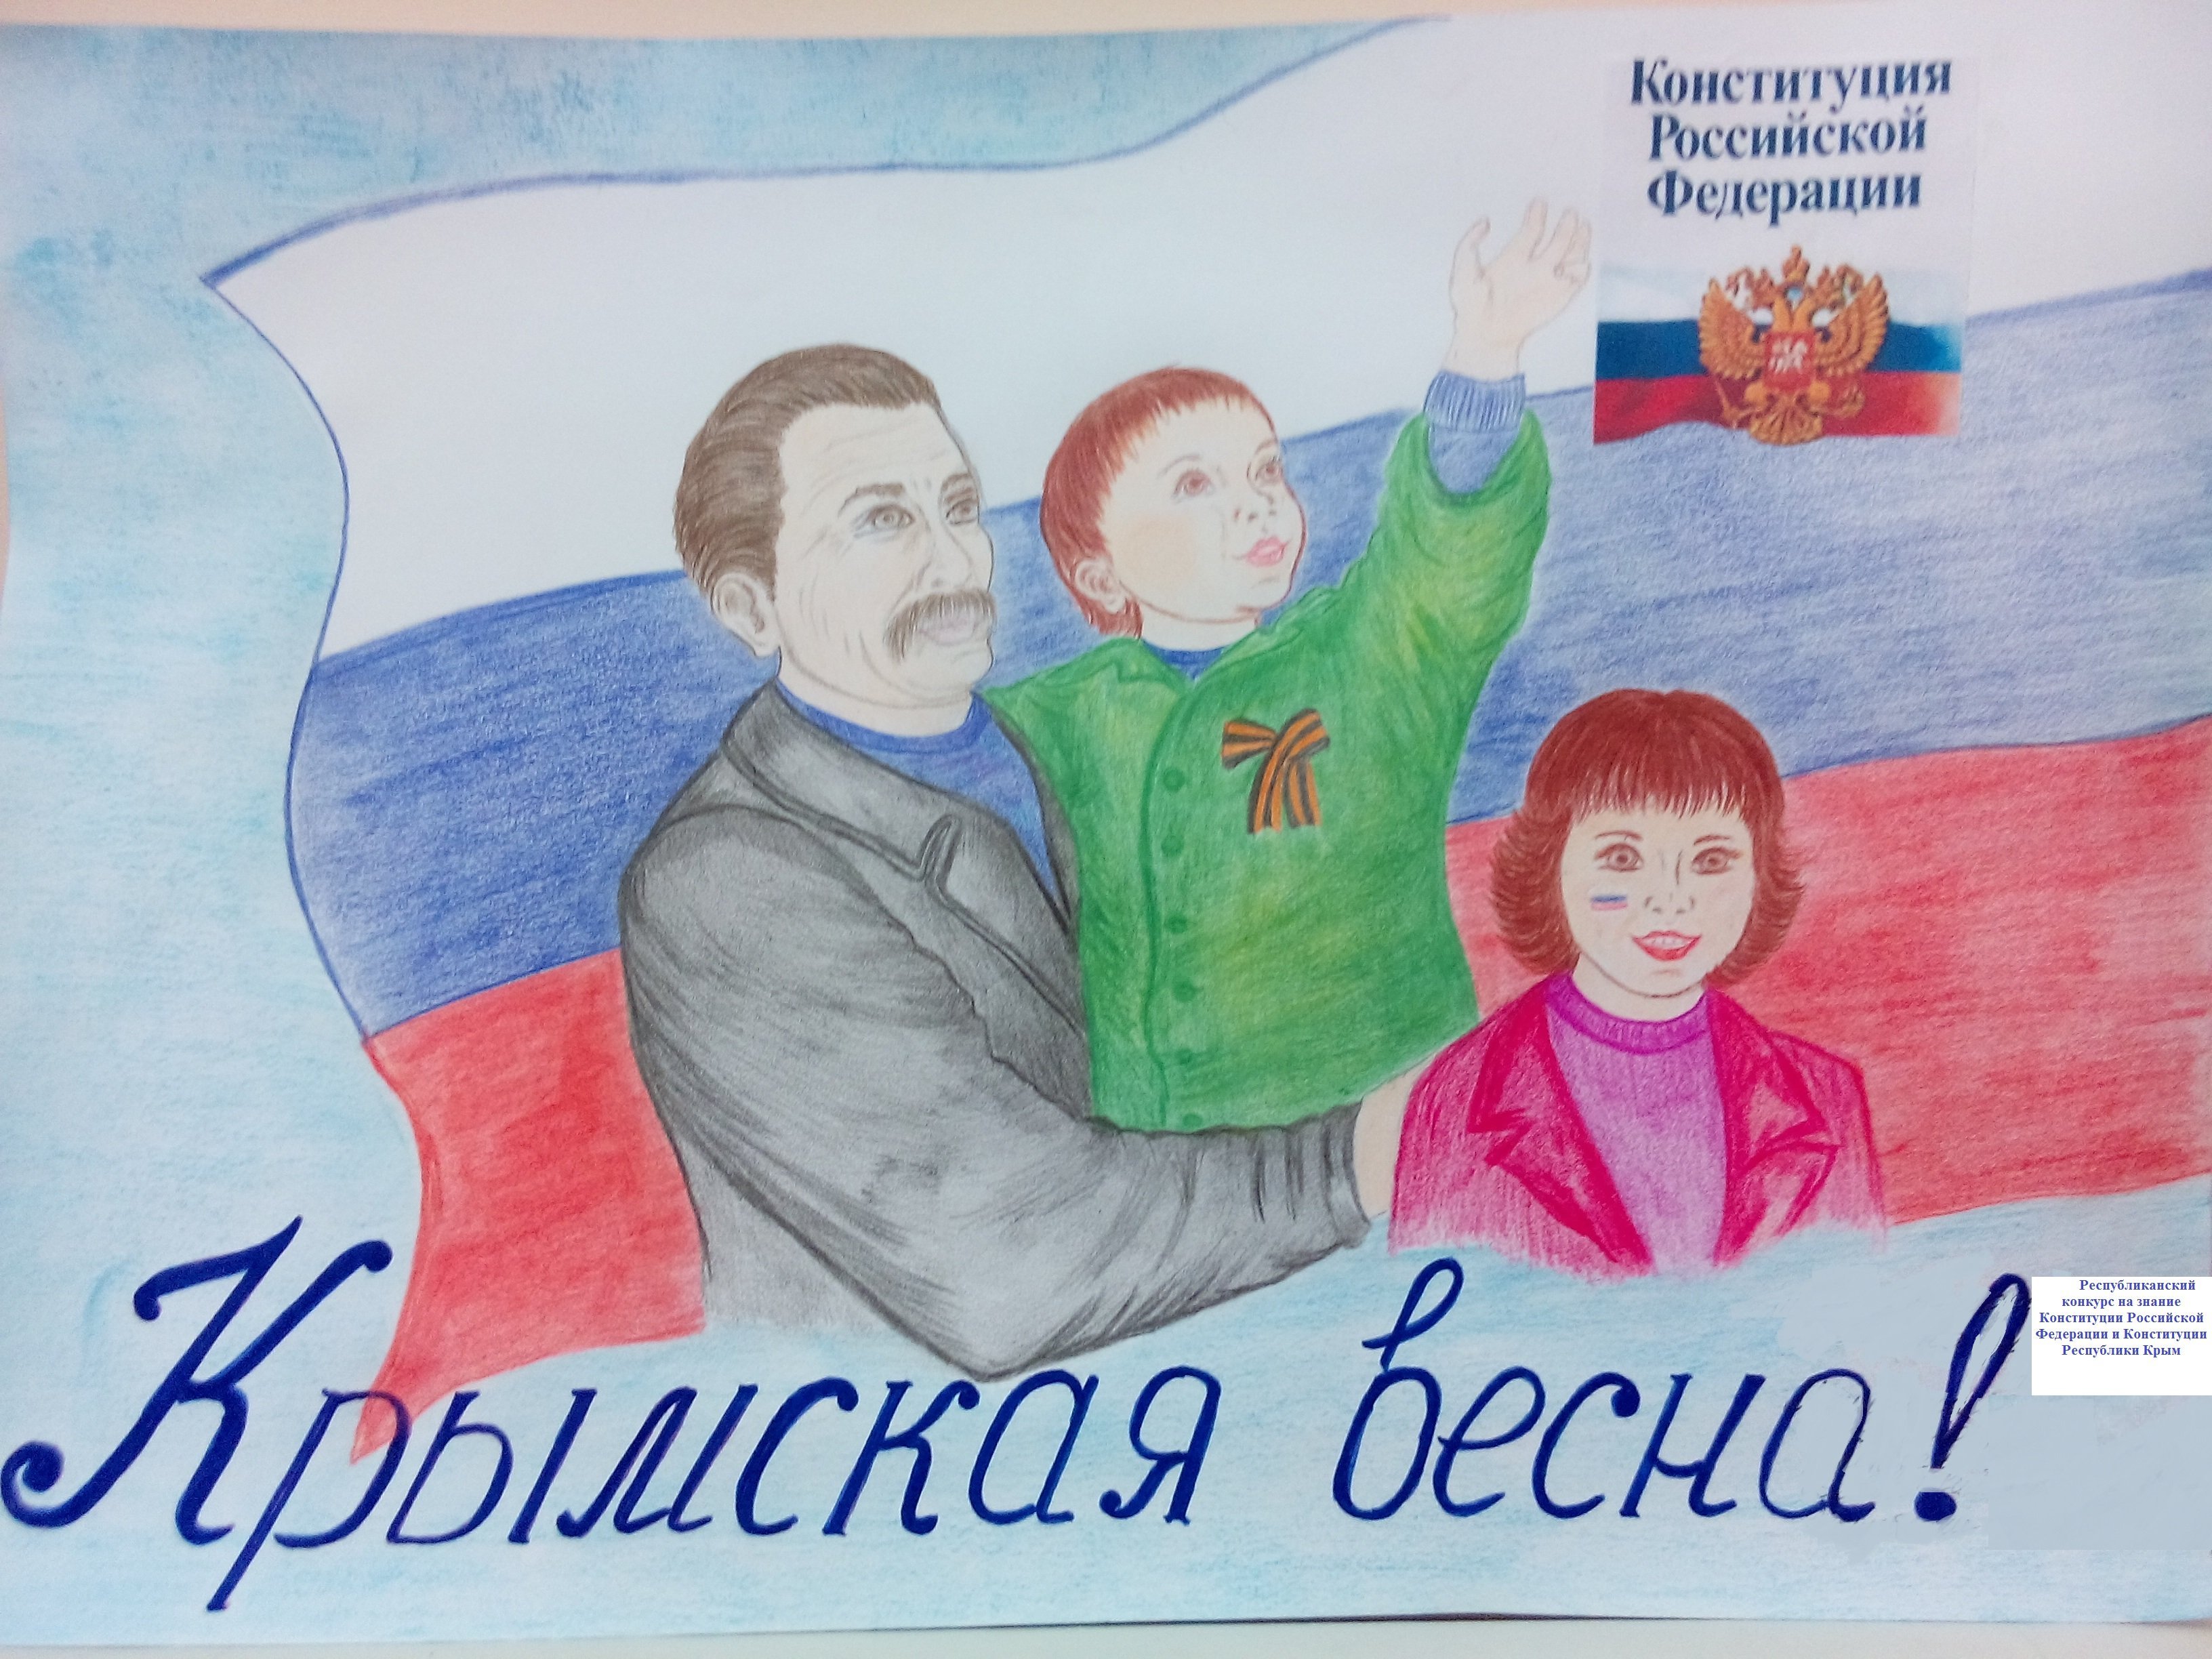 Рисунок на день Конституции Российской